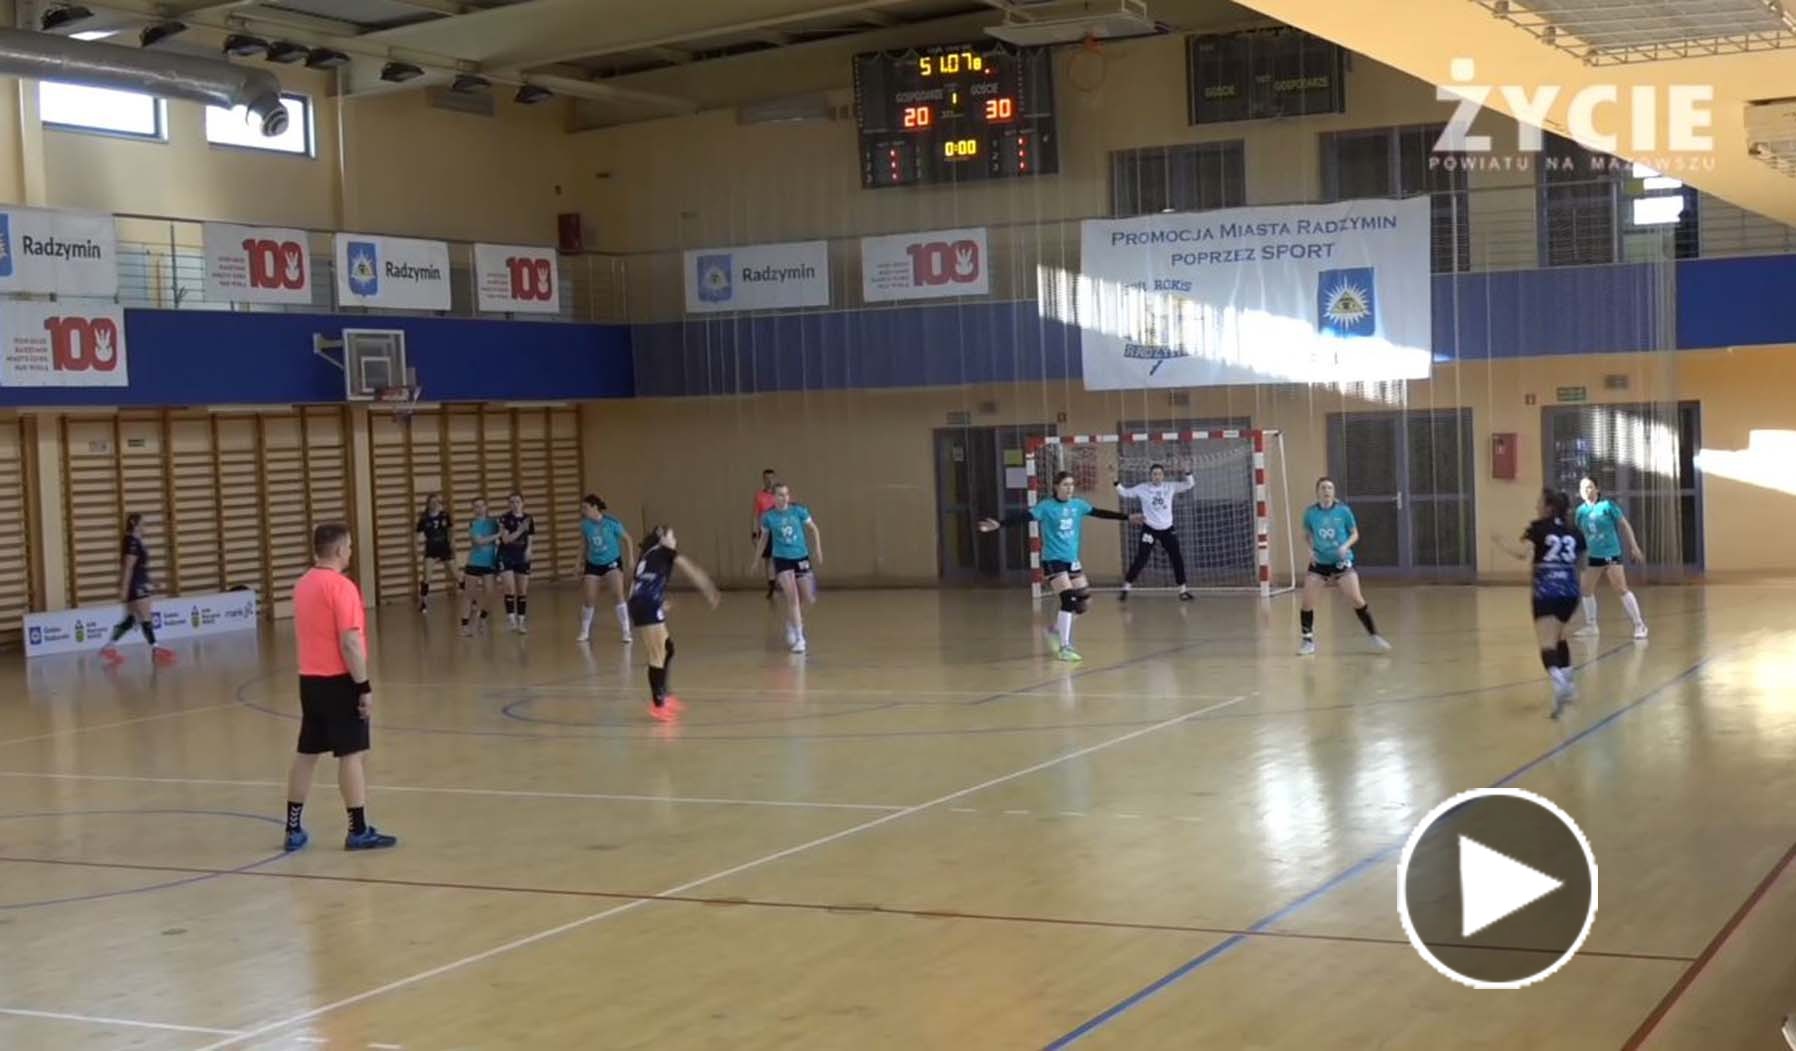 Fragmenty meczu piłki ręcznej pomiędzy KPR Marcovia ROKiS Radzymin a MKS AZS UMCS Lublin